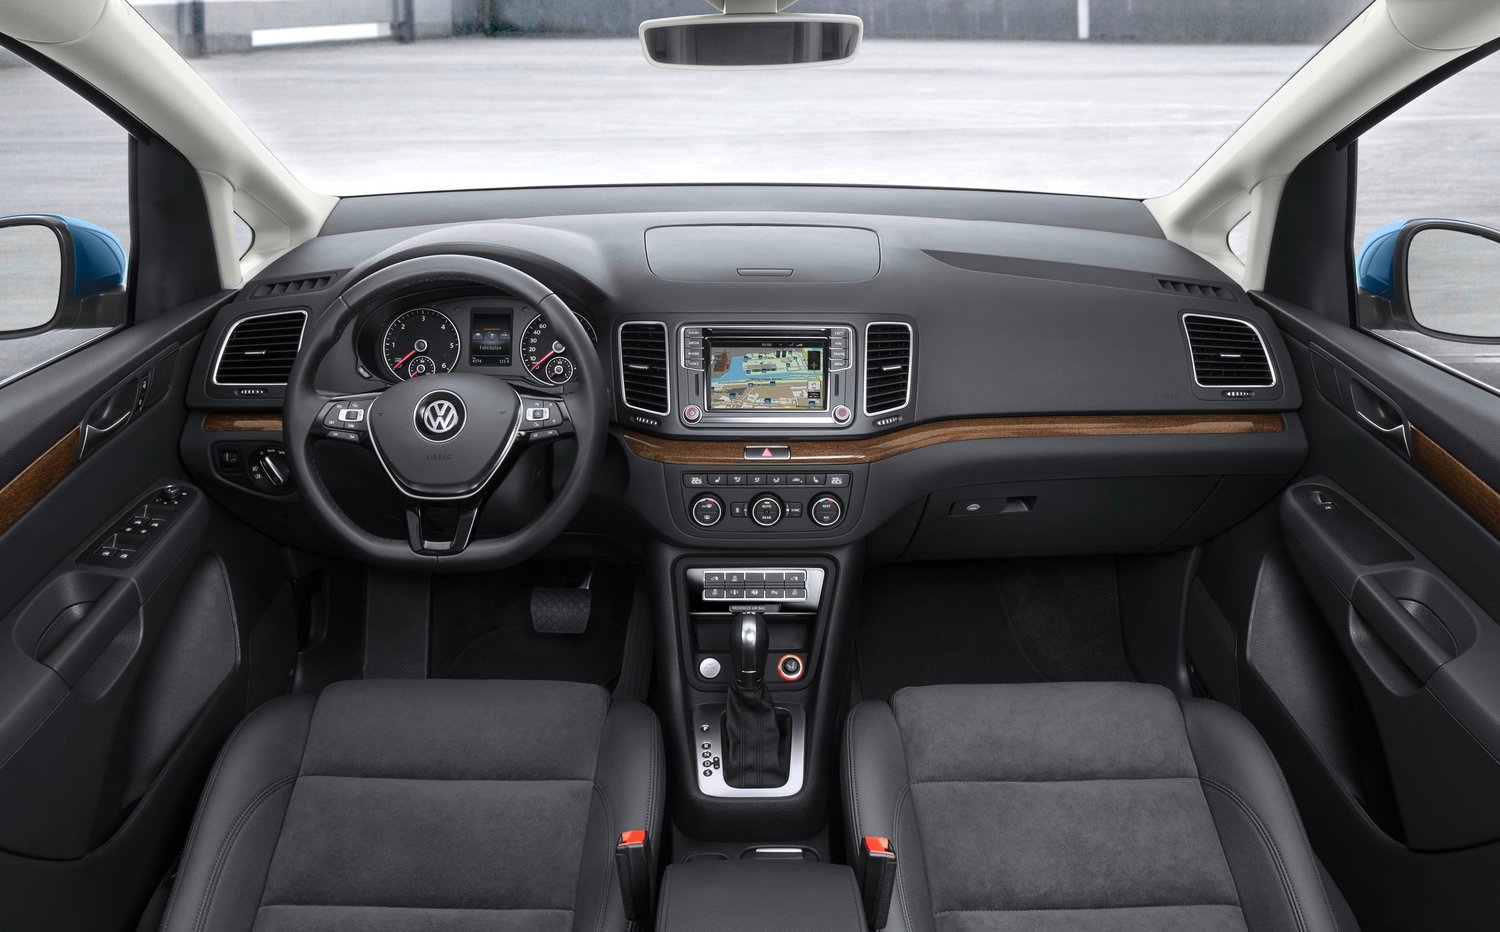 минивэн Volkswagen Sharan 2015 - 2016г выпуска модификация 1.4 AMT (150 л.с.)